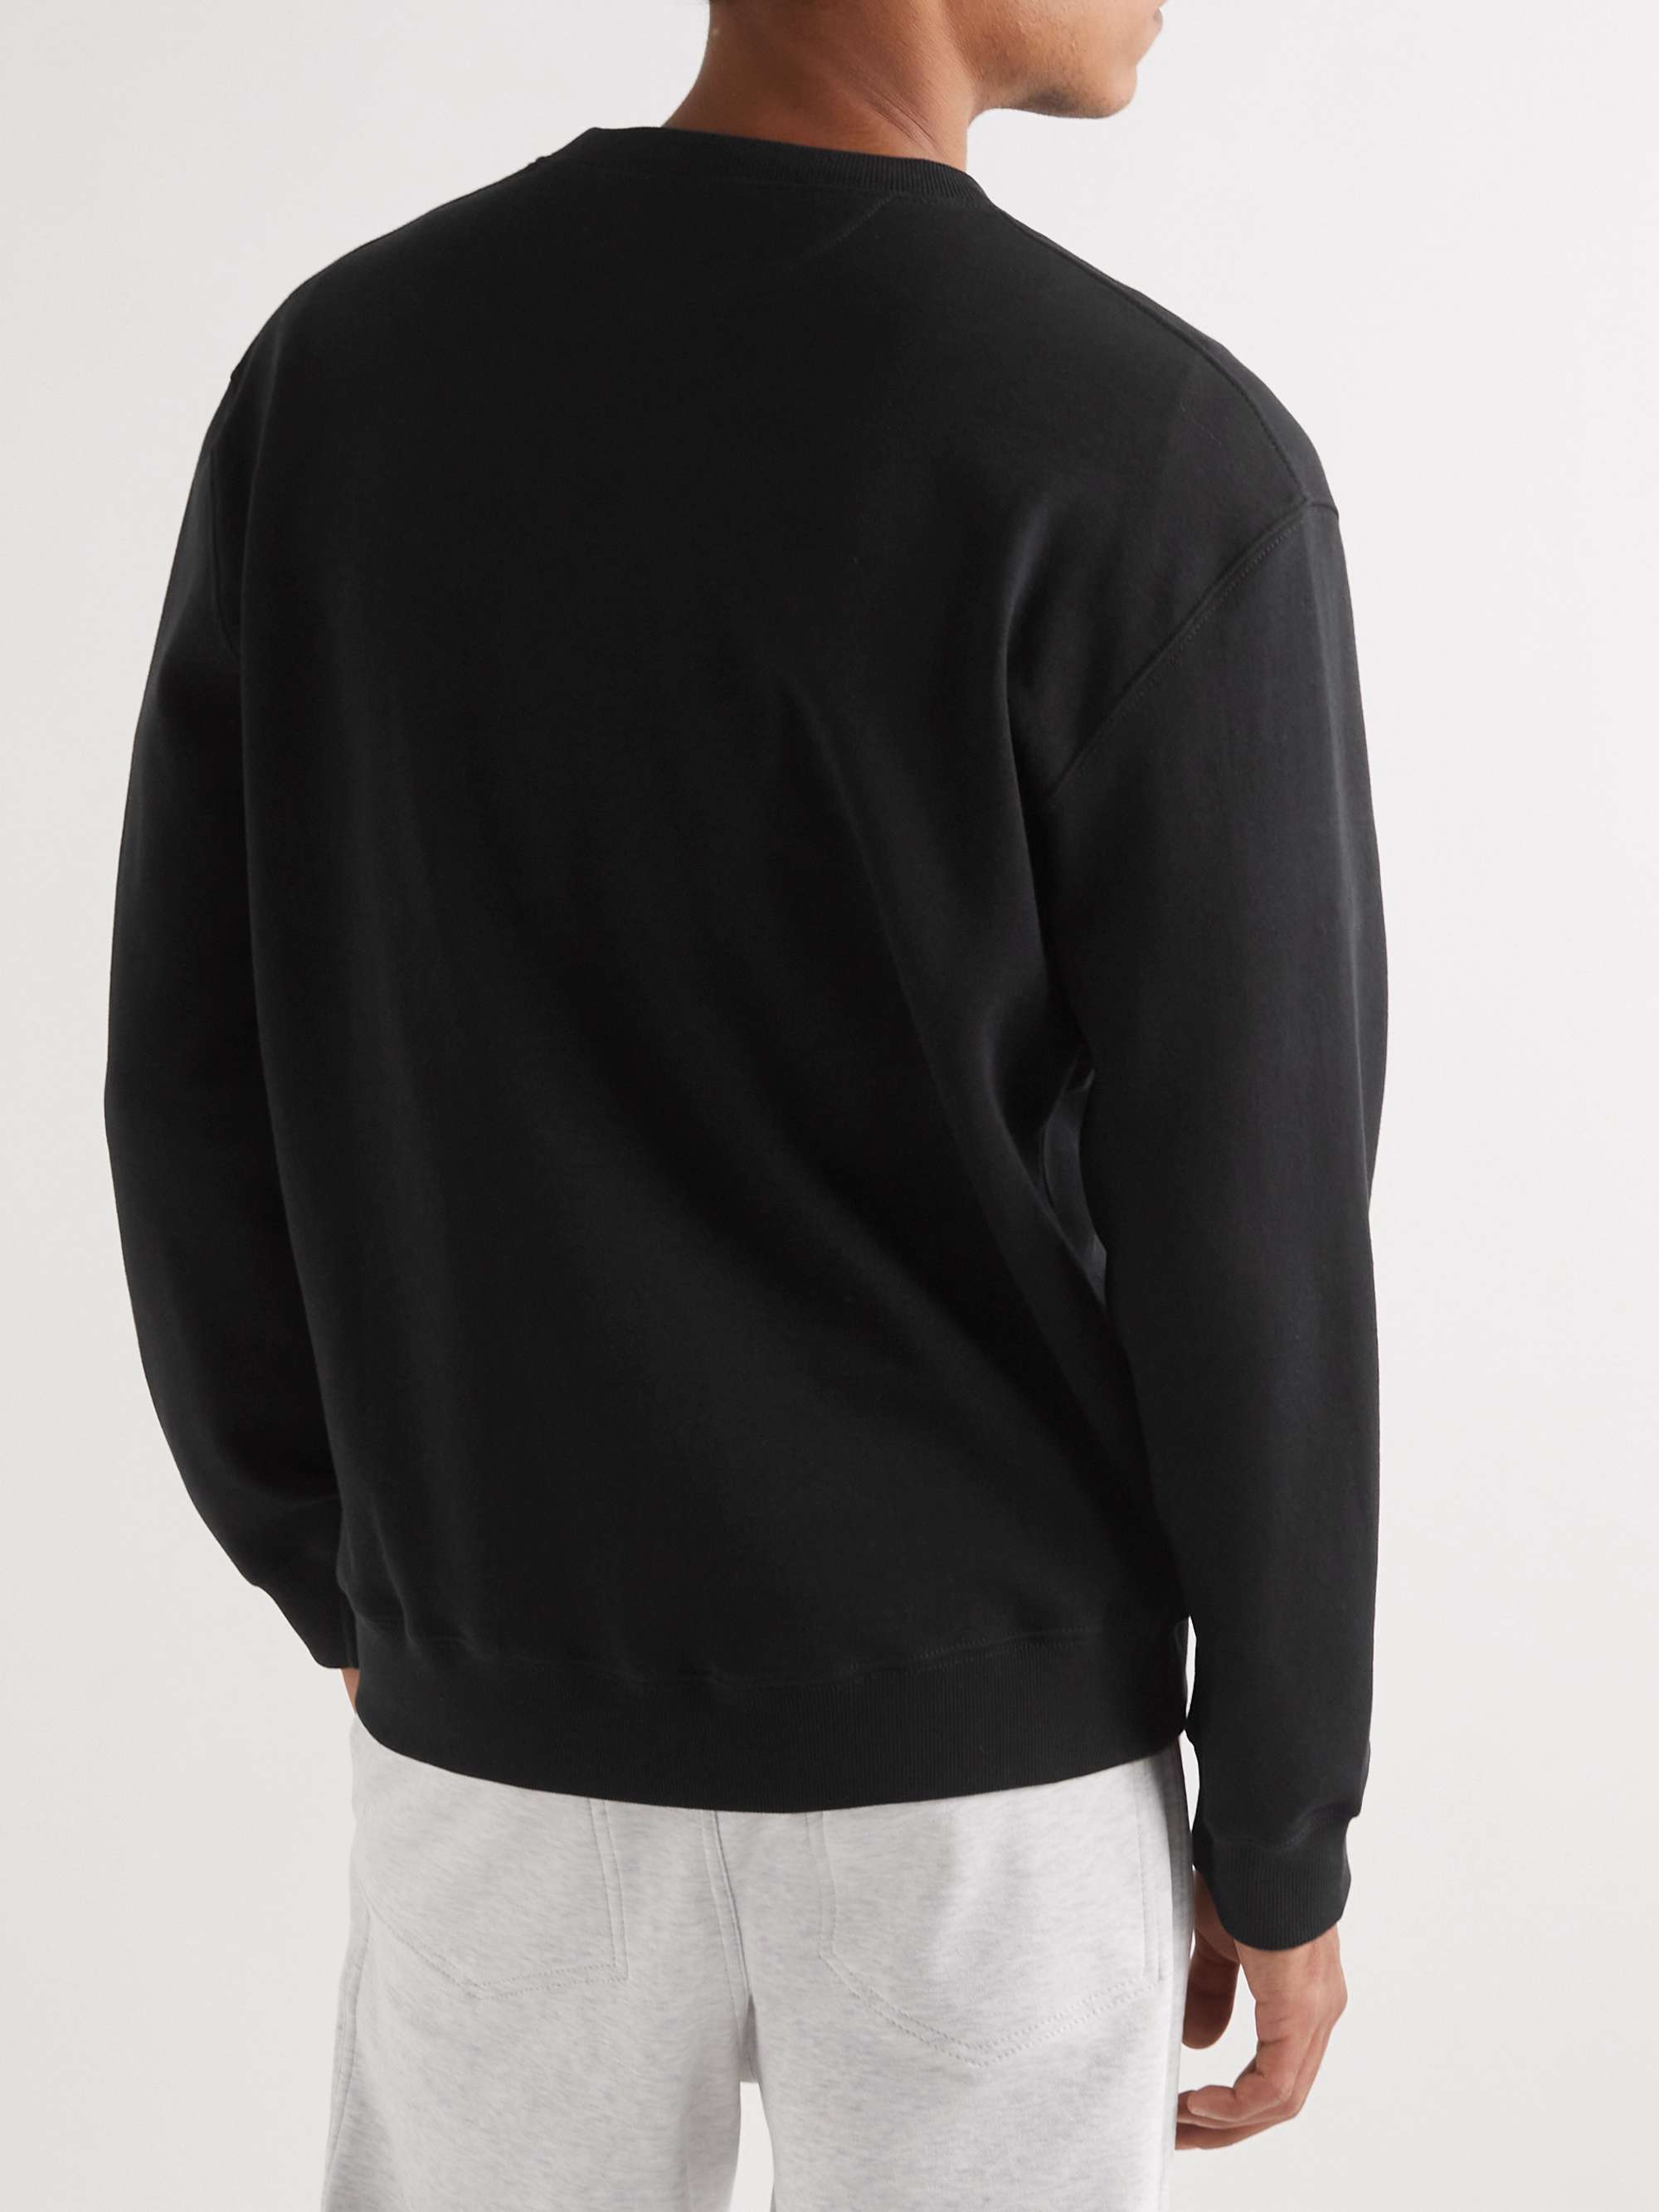 Black Cotton-Blend Jersey Sweatshirt | BRUNELLO CUCINELLI | MR PORTER